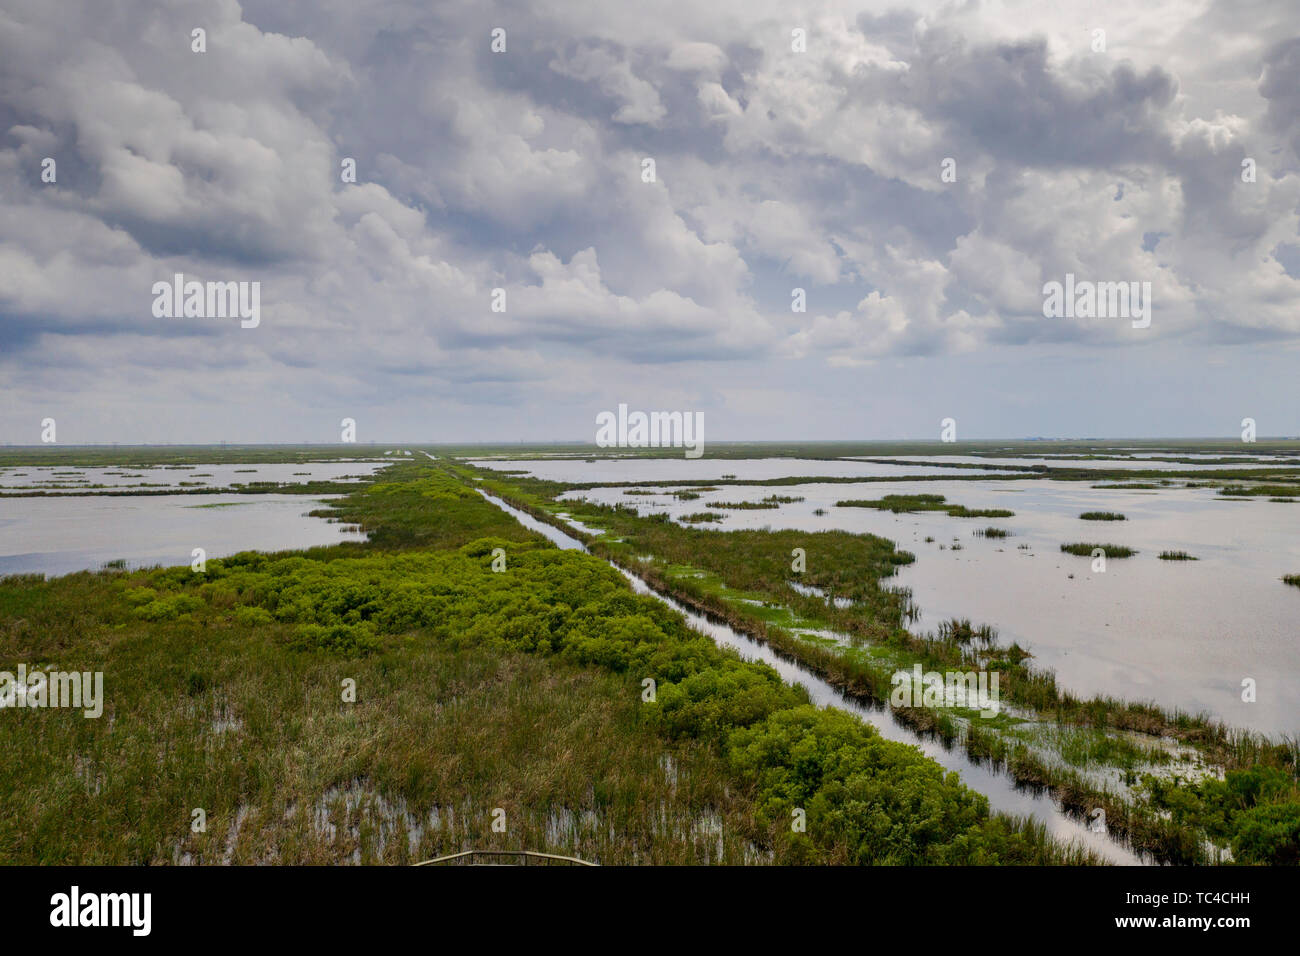 Belle Glade, Floride - une des zones humides artificielles, l'un des six domaines du traitement des eaux pluviales construits en Floride du sud pour réduire la quantité de phosphore e Banque D'Images